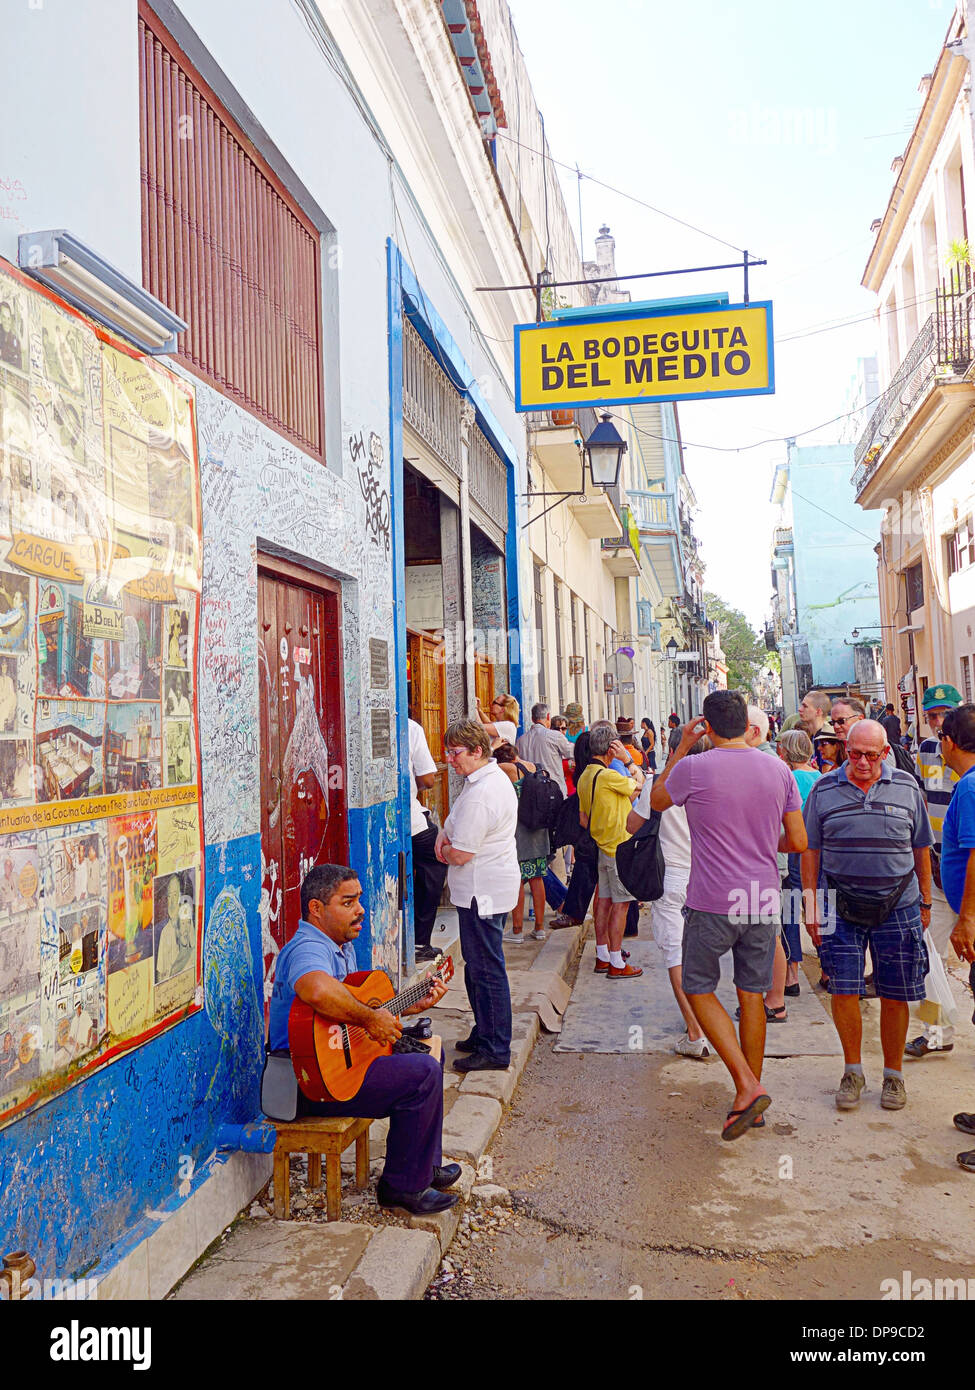 Outside the La Bodeguita del Medio bar in Havana, Cuba Stock Photo